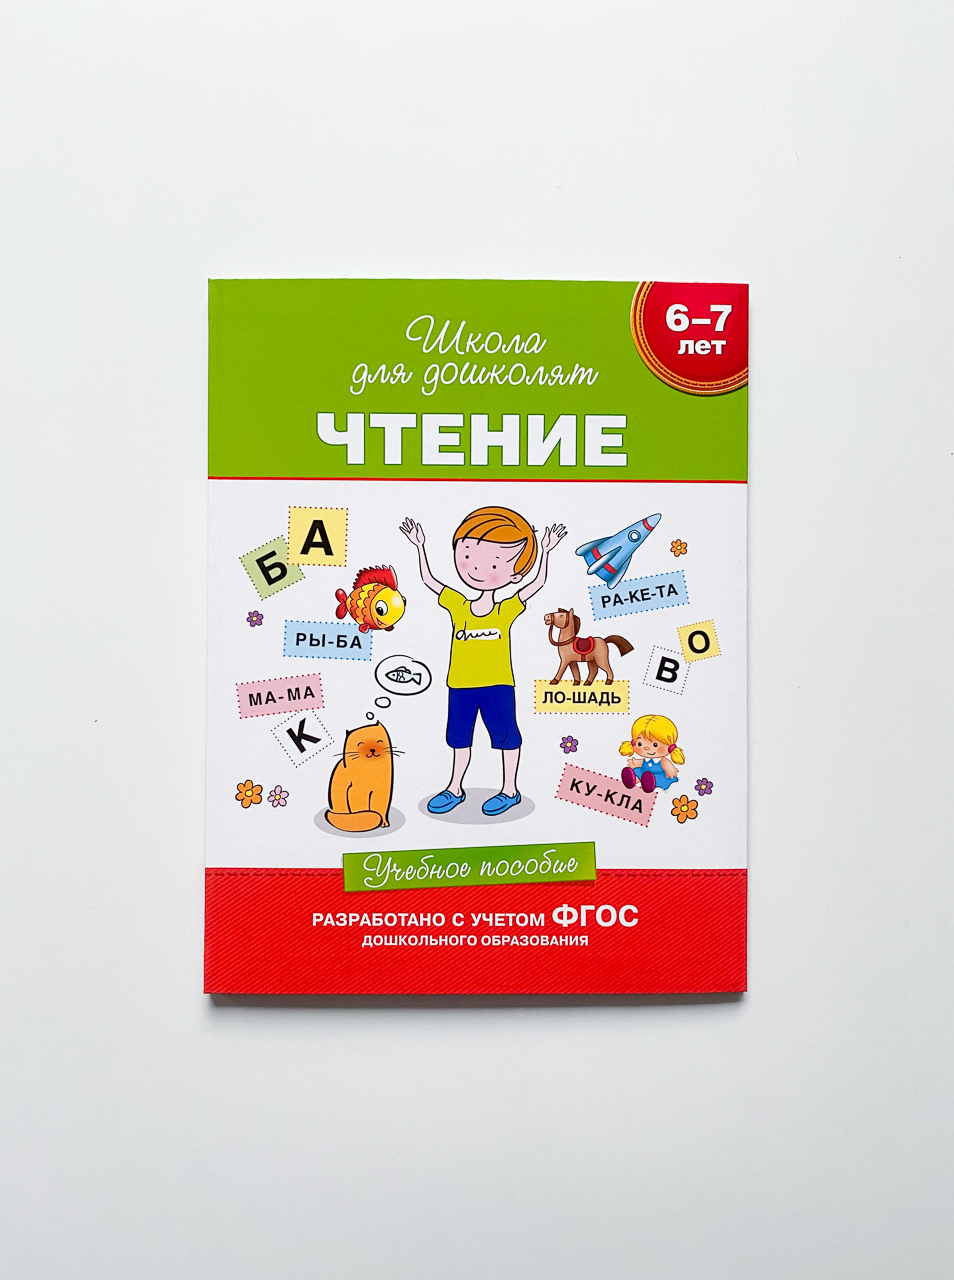 Уроки для дошколят - серия книг издательства АСТ